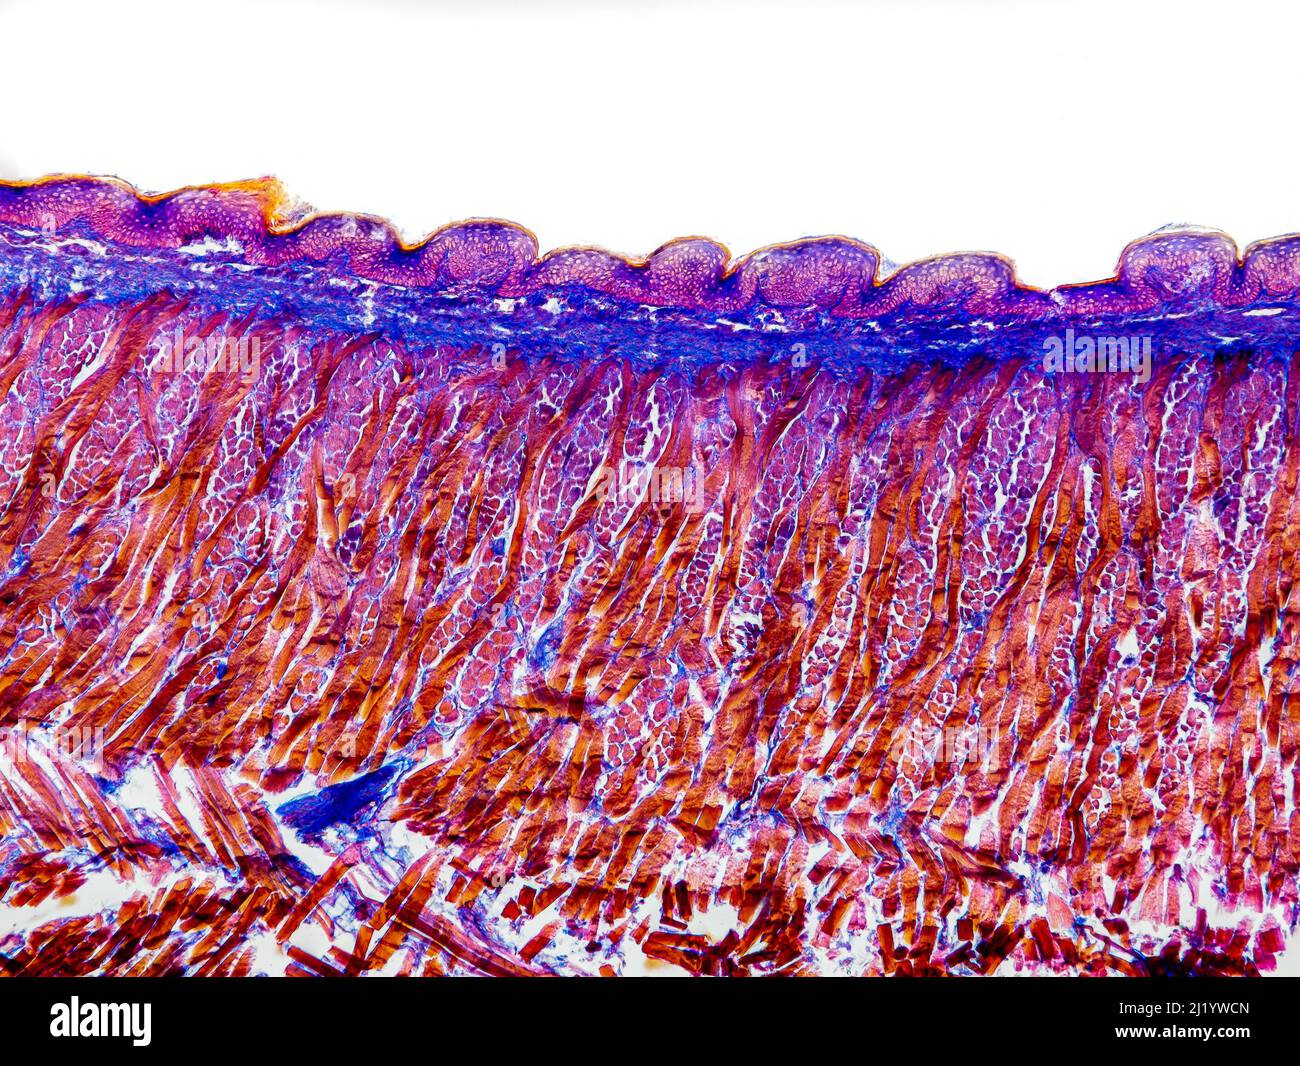 sección transversal de la lengua de gato bajo el microscopio que muestra papilas foliadas, papilas gustativas, submucosa y músculo - ampliación del microscopio óptico x100 Foto de stock